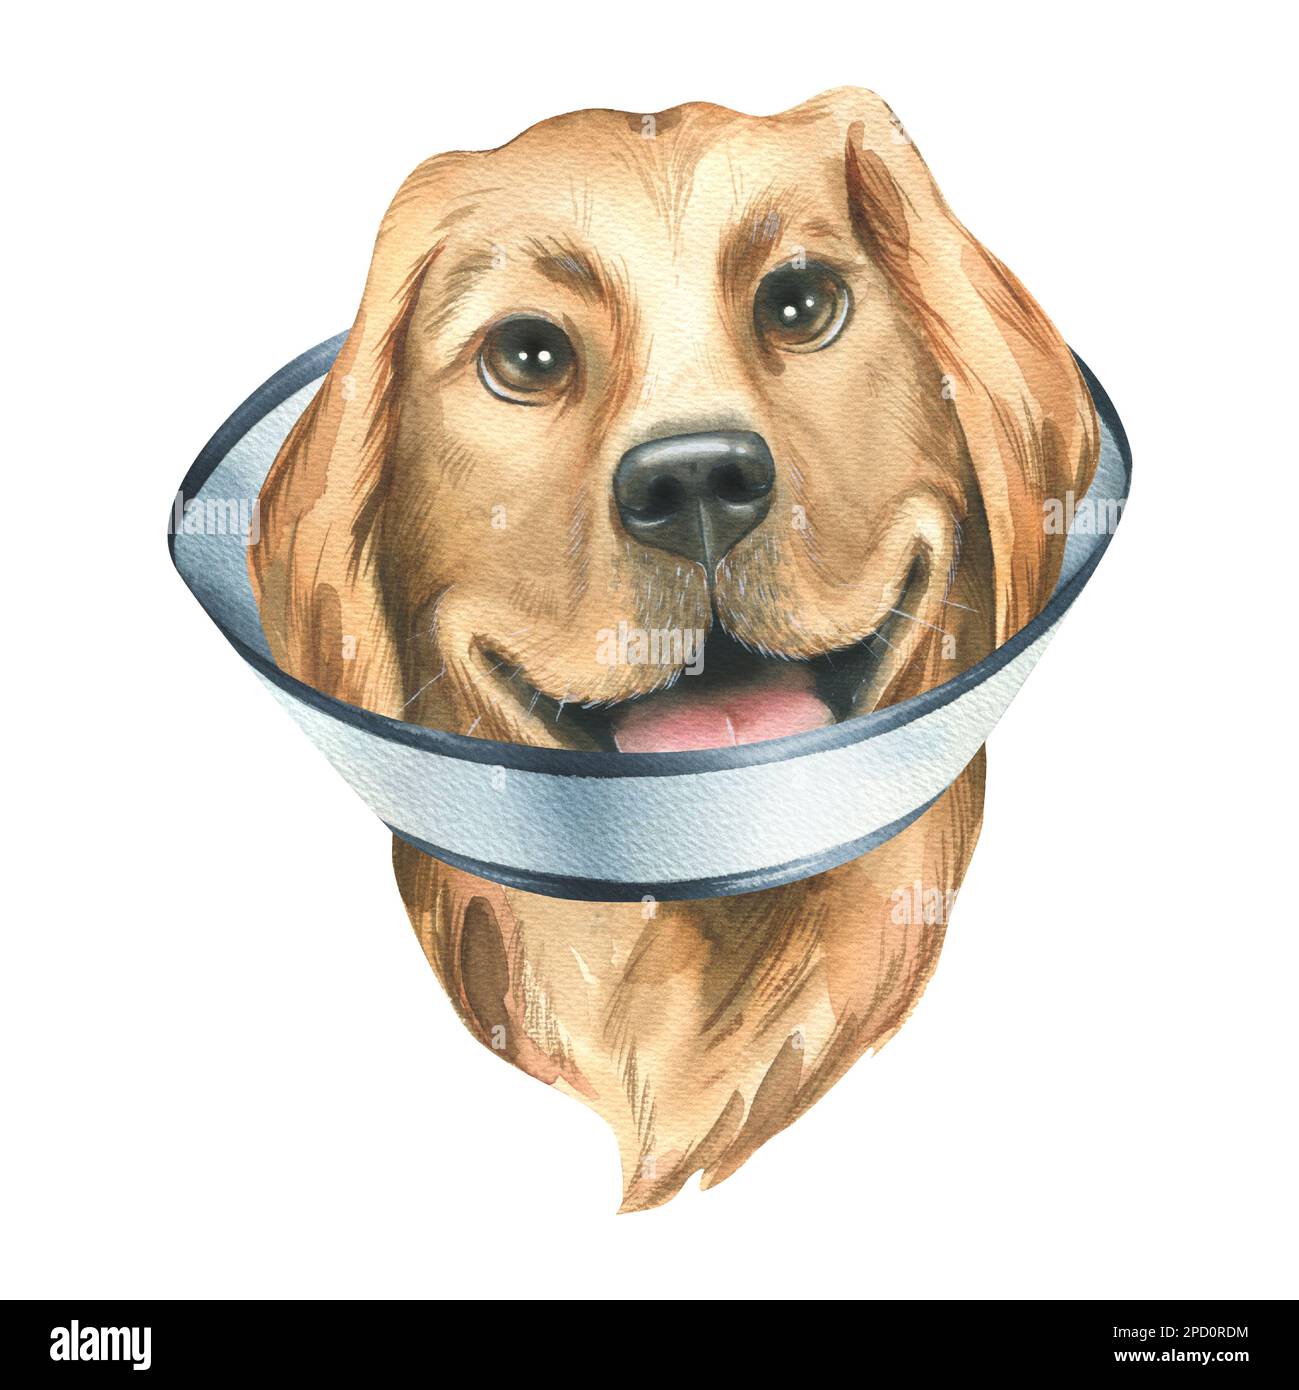 Ein kranker Hund in einer schützenden, veterinärmedizinischen Halsband, goldene Retriever-Rasse. Aquarelldarstellung. Ein isoliertes Objekt aus DER TIERÄRZTLICHEN Sammlung. Für Stockfoto